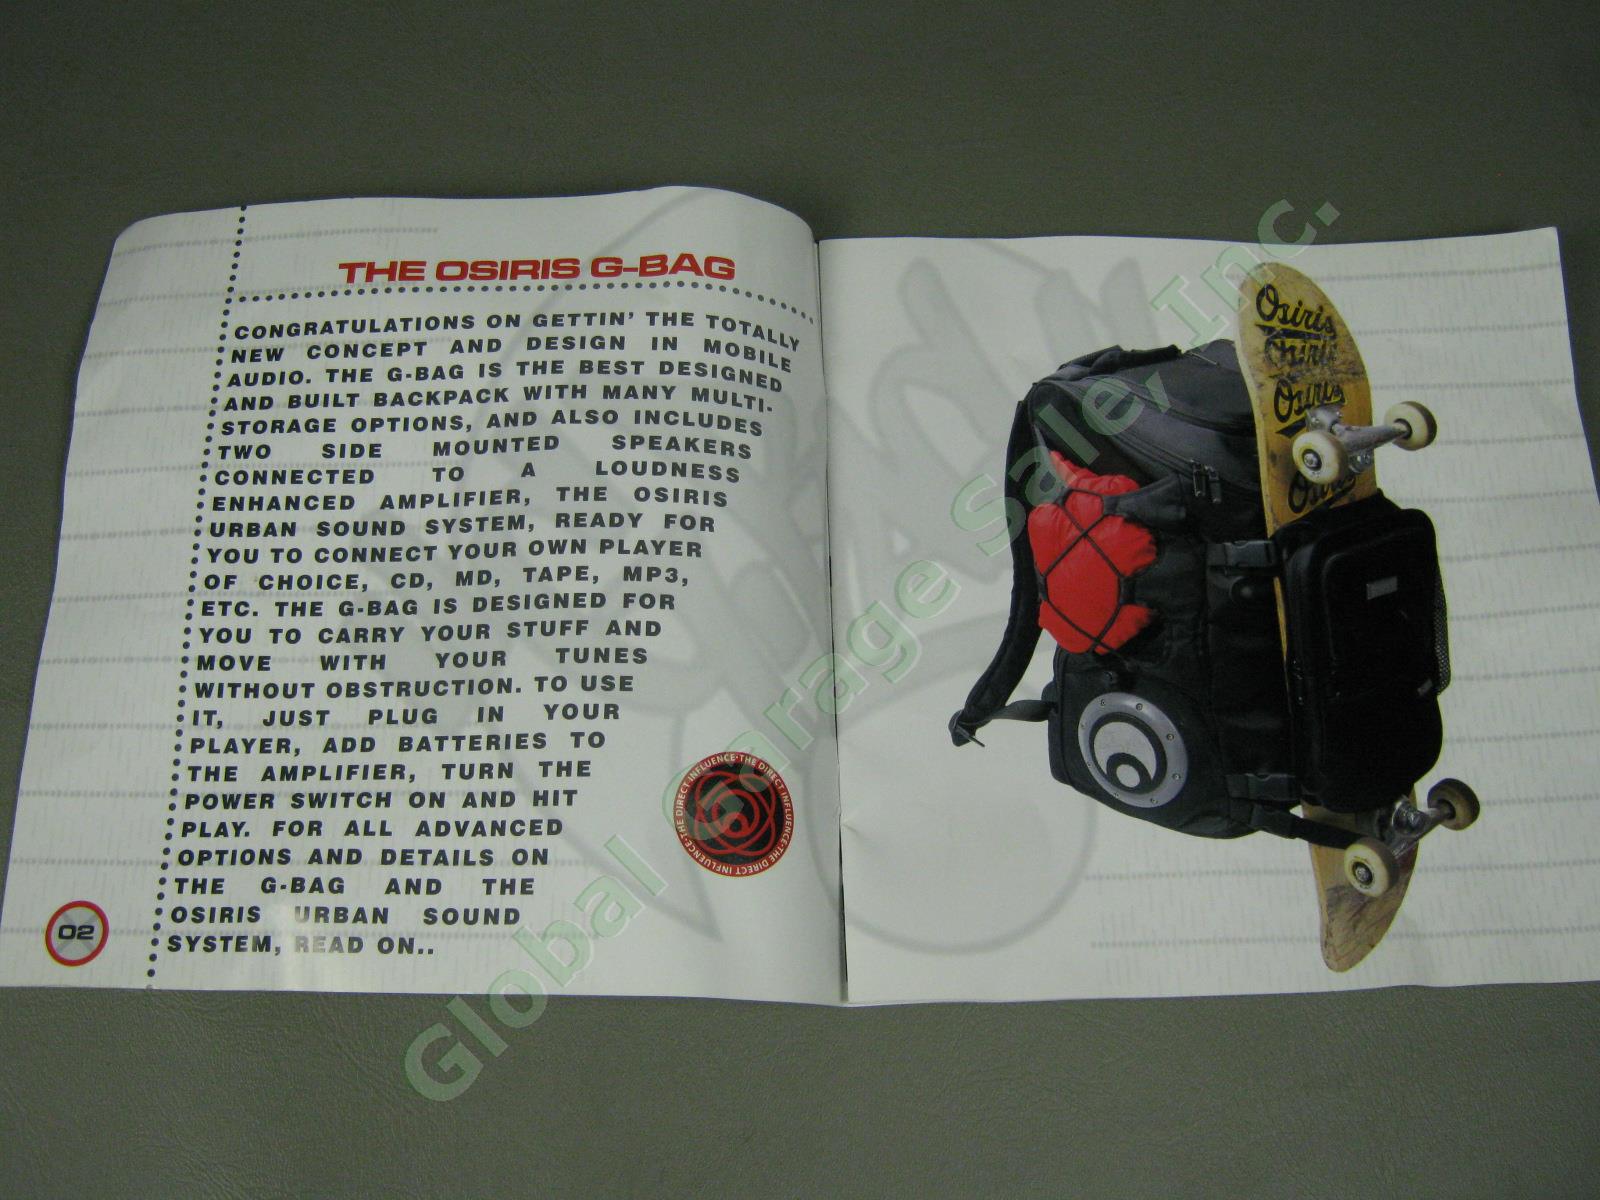 NOS Osiris G-Bag Metatron 2100 Backpack Skate Pack w/ Stereo Speakers + Amp NR! 13